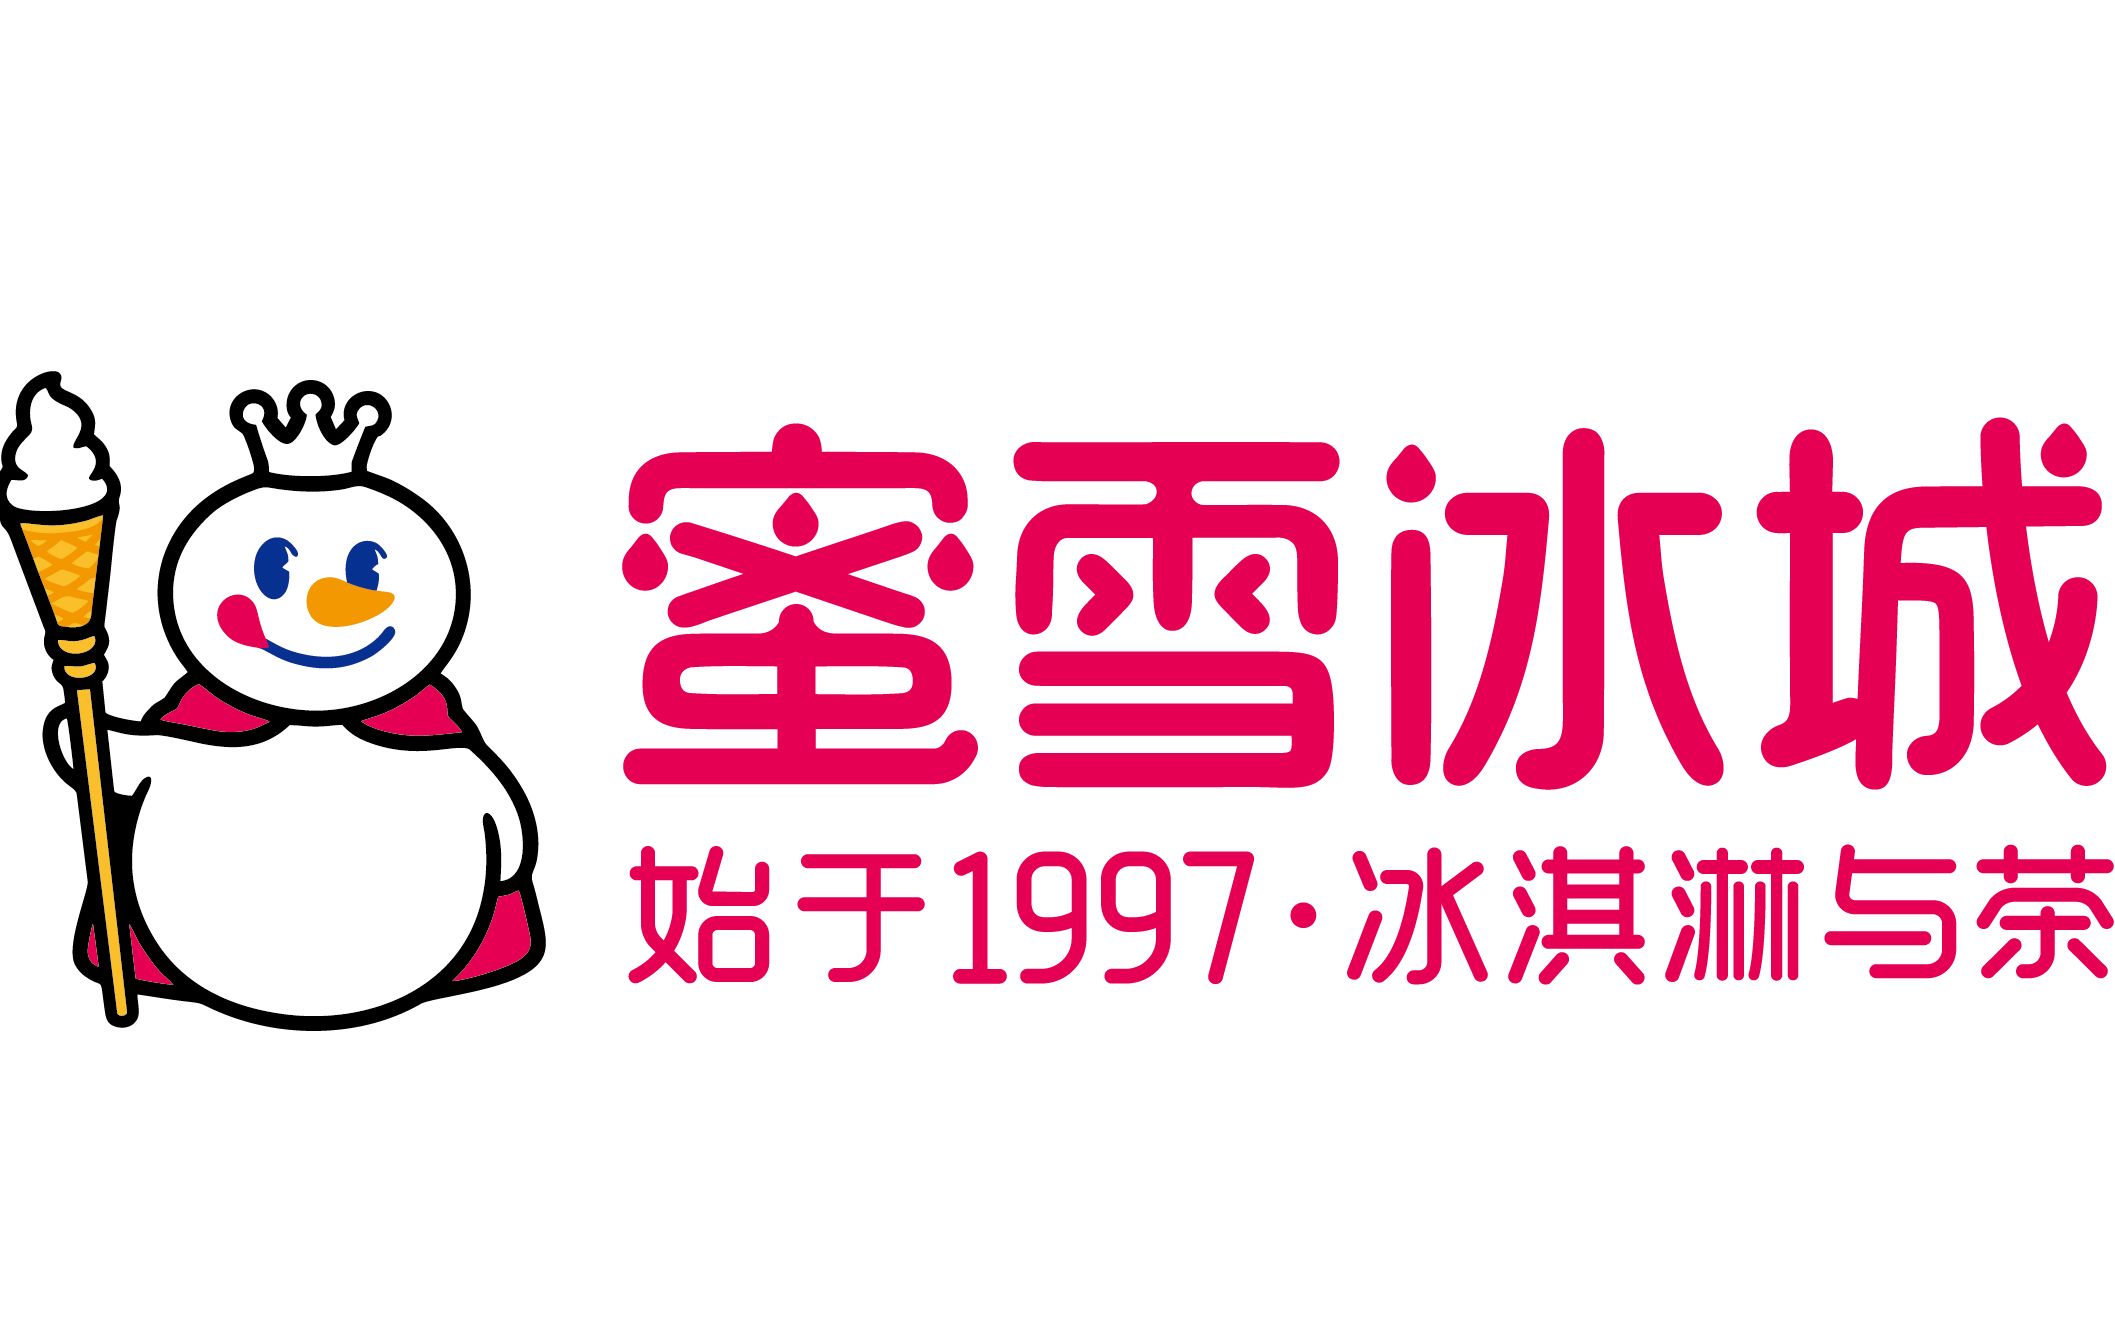 蜜雪冰城logo 图标图片